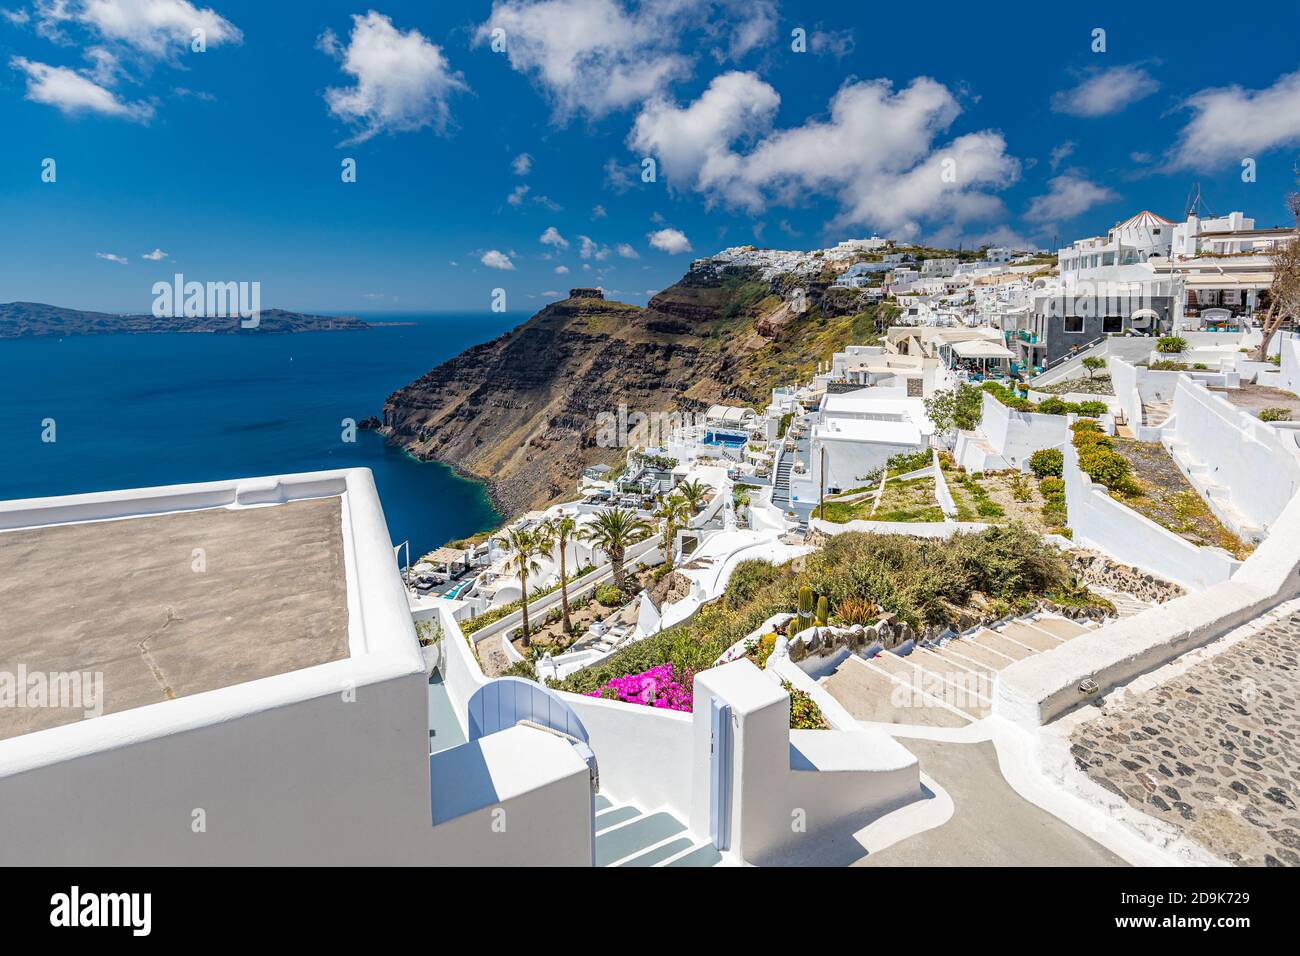 Wunderschöne weiße Caldera Ansicht von Santorini in Griechenland. Sommerurlaub für Reise Ziel Hintergrund Konzept. Wunderbare romantische Landschaft Hintergrund Stockfoto